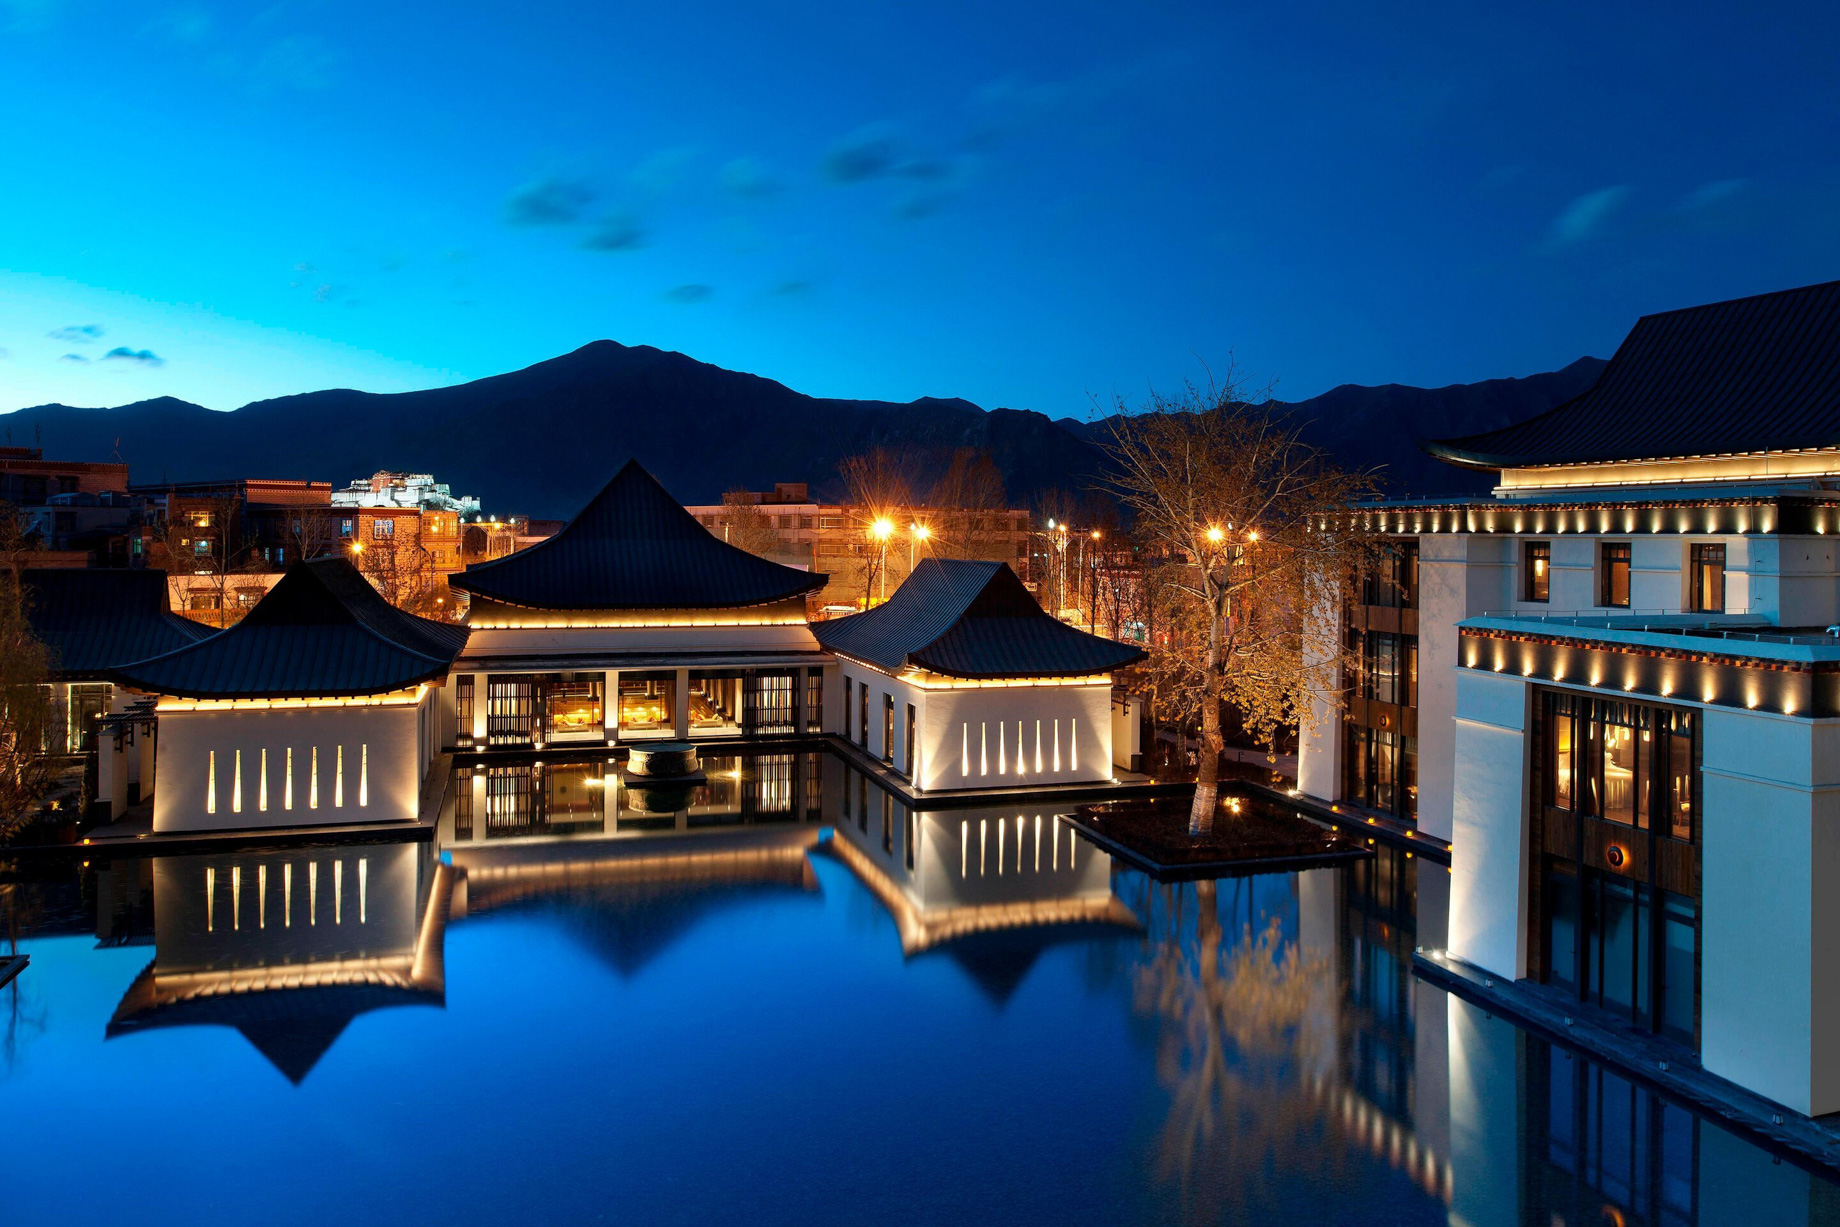 The St. Regis Lhasa Resort - Lhasa, Xizang, China - Resort Lake View Night